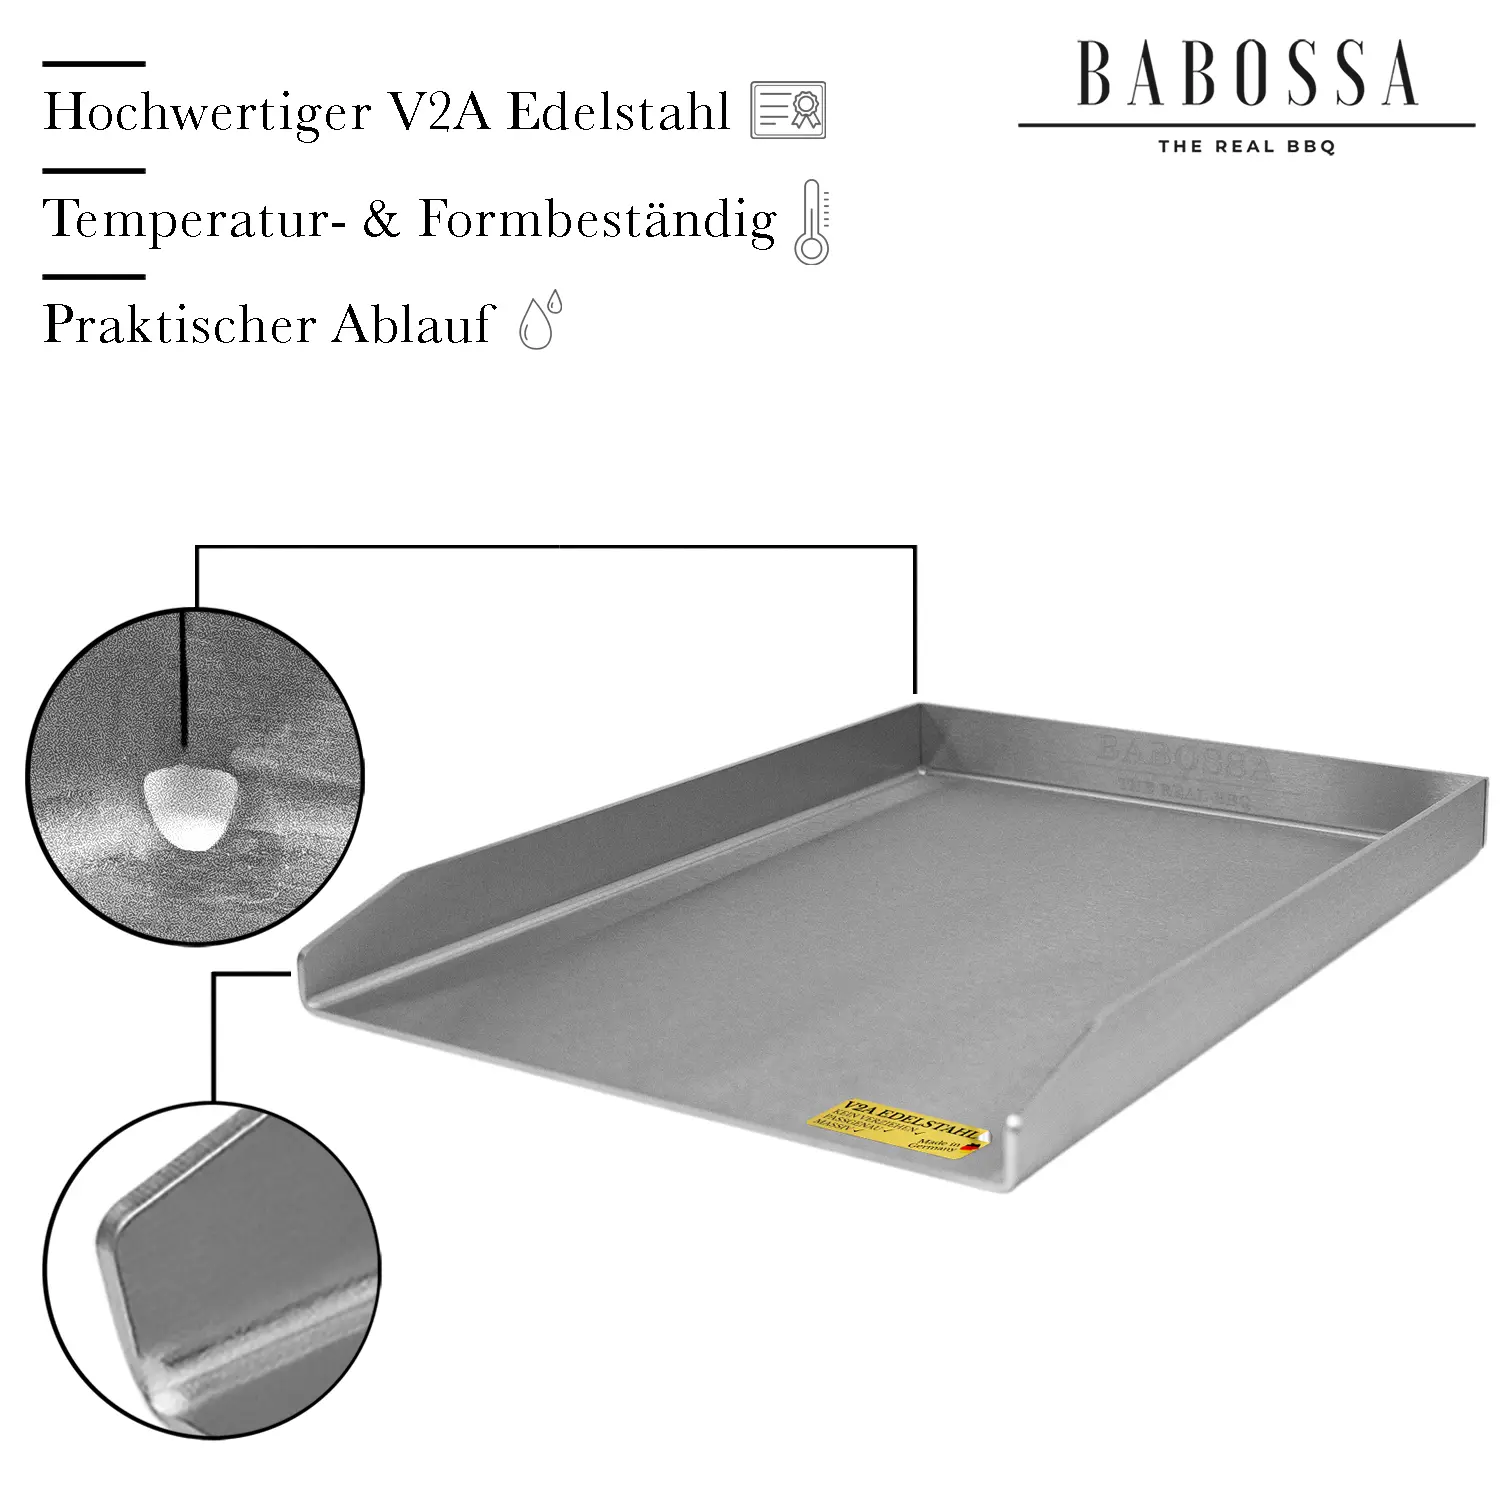 Plancha | Grillplatte | Edelstahl V2A | Universal Medium | 30x40cm